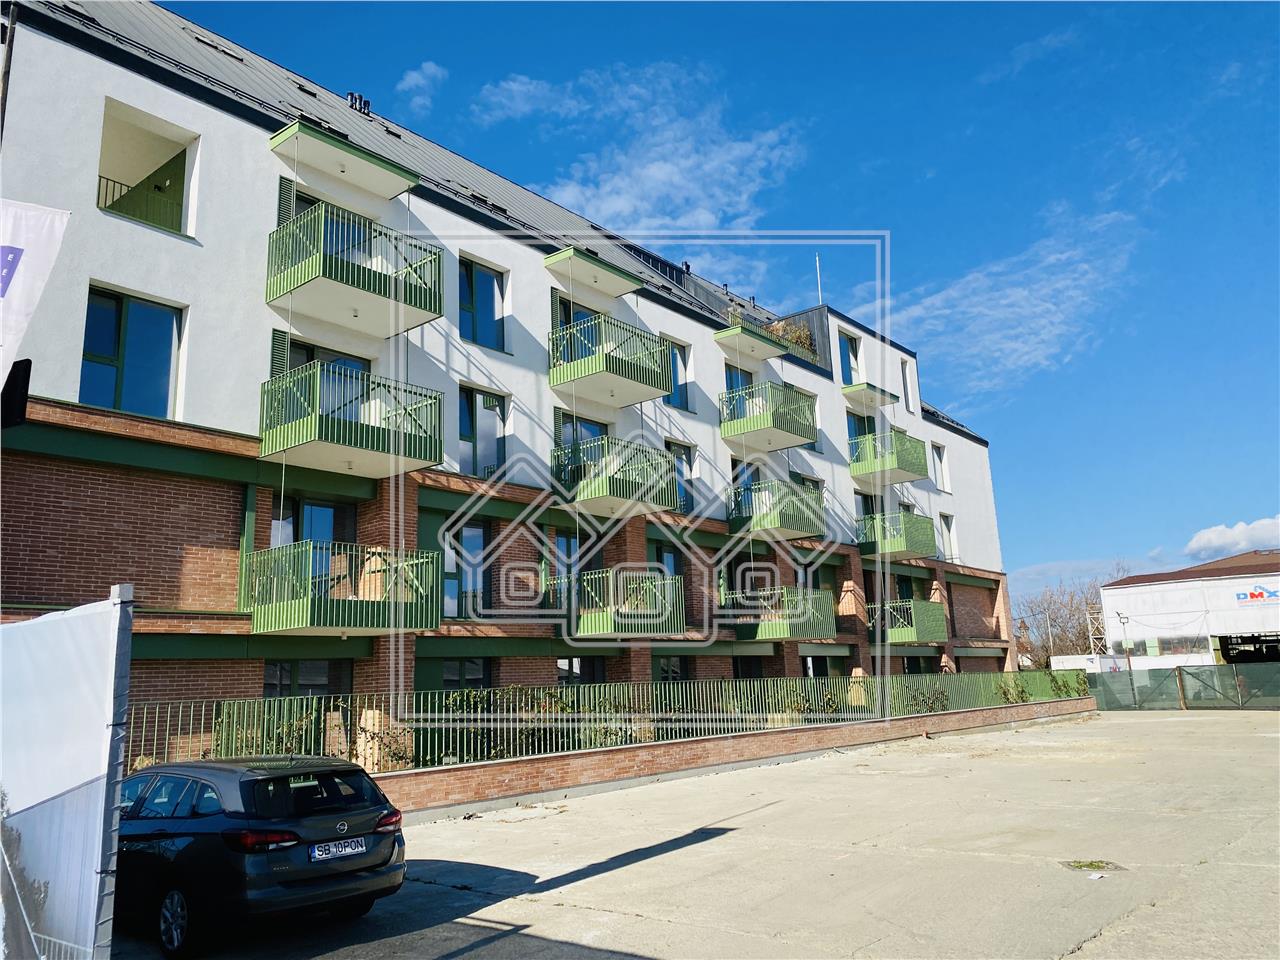 Wohnung zu verkaufen in Sibiu - 4 Zimmer, 3 Bader und gro?e Terrasse